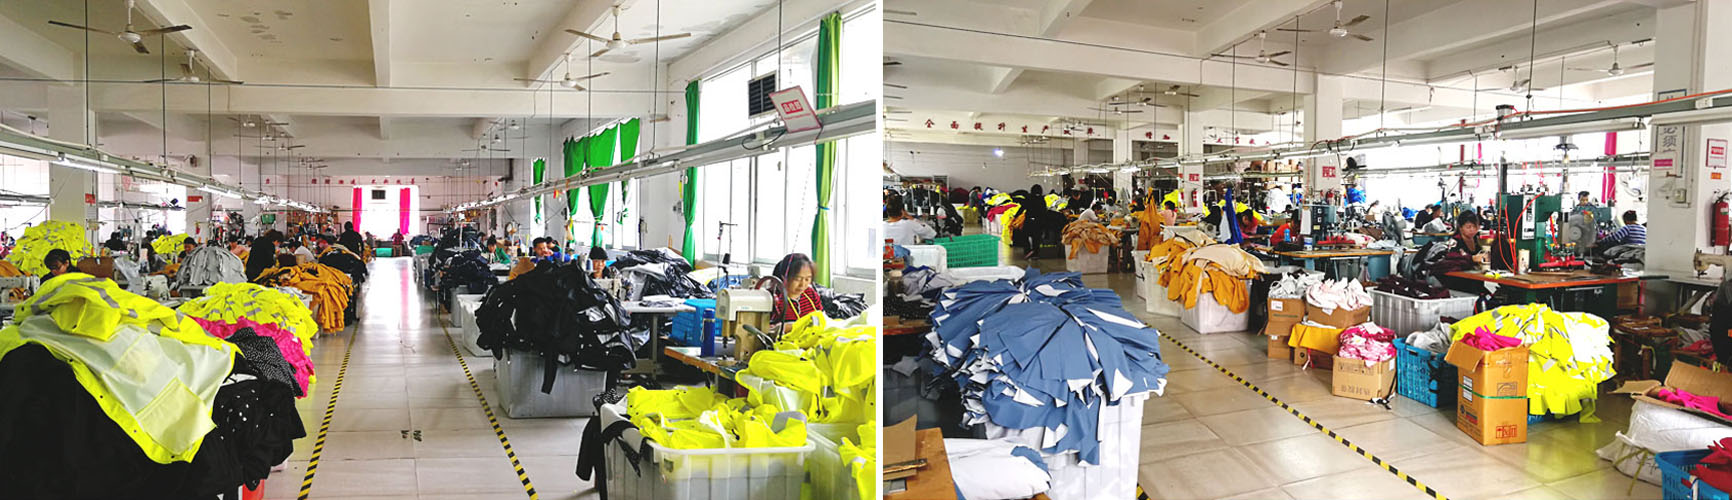 Phân xưởng sản xuất áo mưa đang hoạt động giải quyết đơn hàng theo hợp đồng.